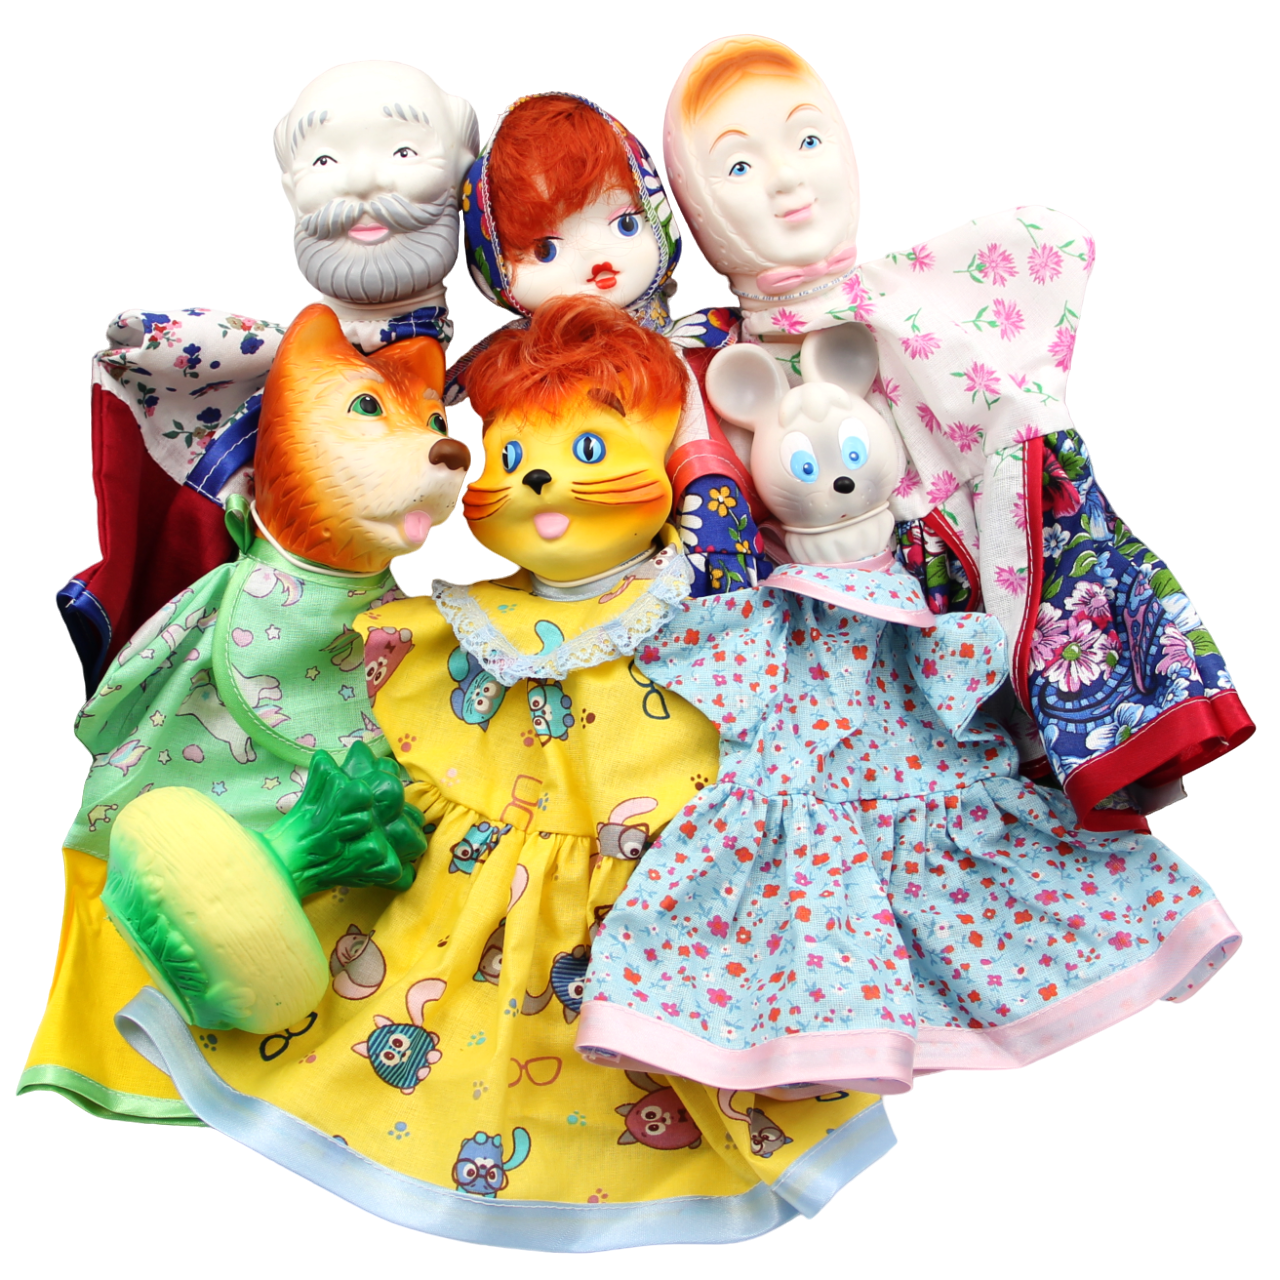 Кукла-перчатка Кудесники Домашний кукольный театр для детей Репка СИ-698-01 кукольный театр кудесники колобок 7 персонажей арт си 683